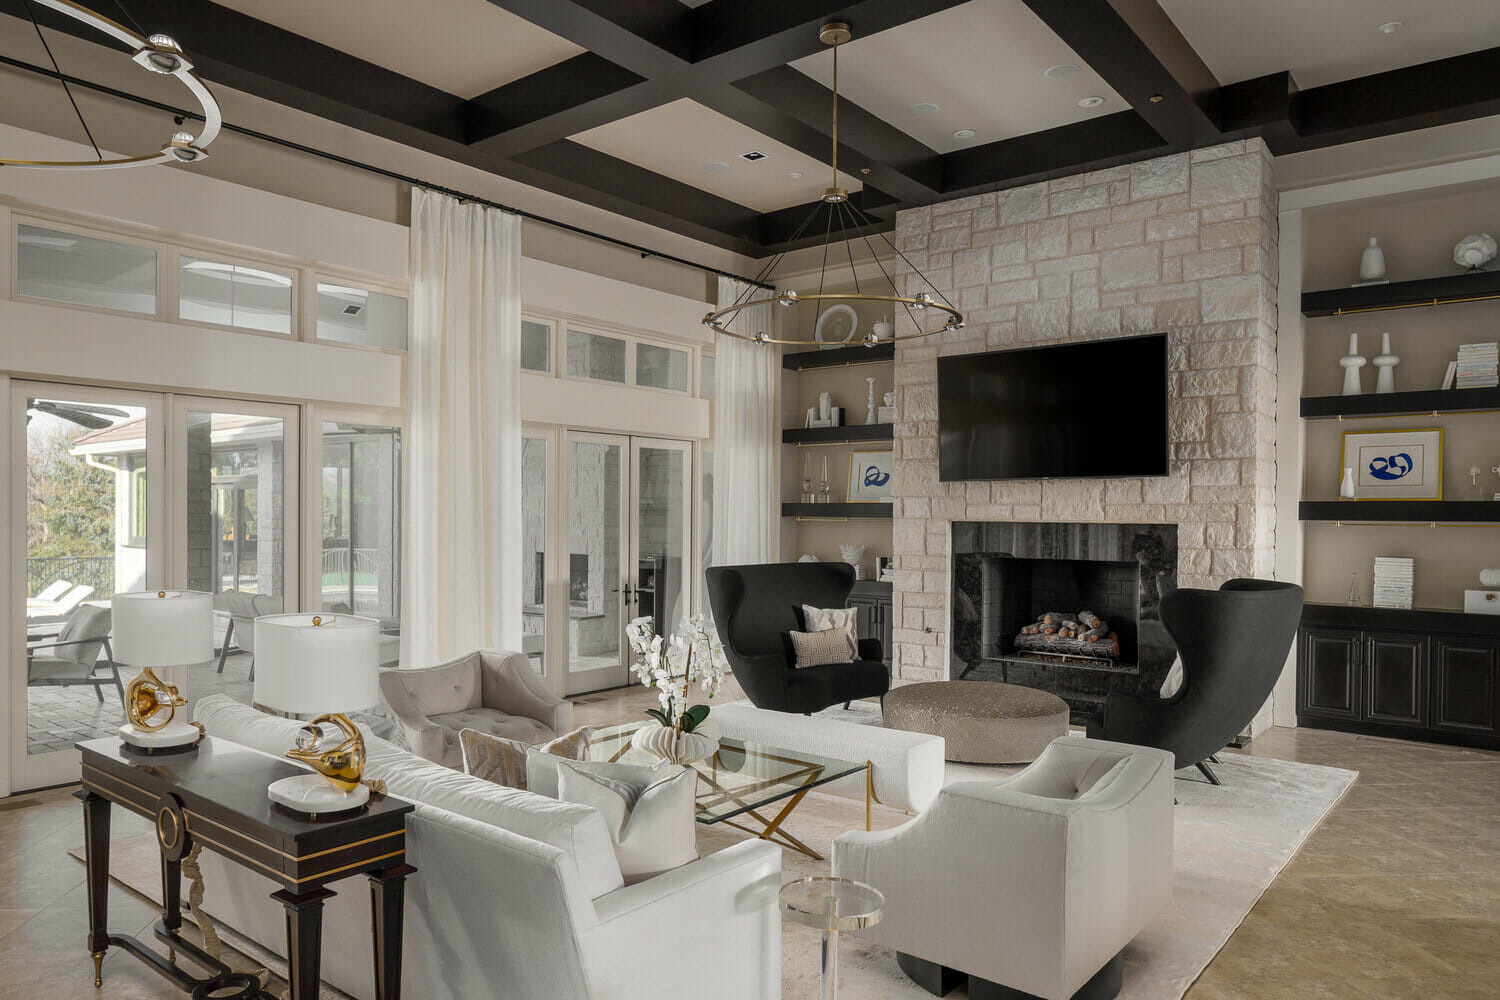 Top 10 Oklahoma City Interior Designers, Living Room Furniture Sets Okc Ok